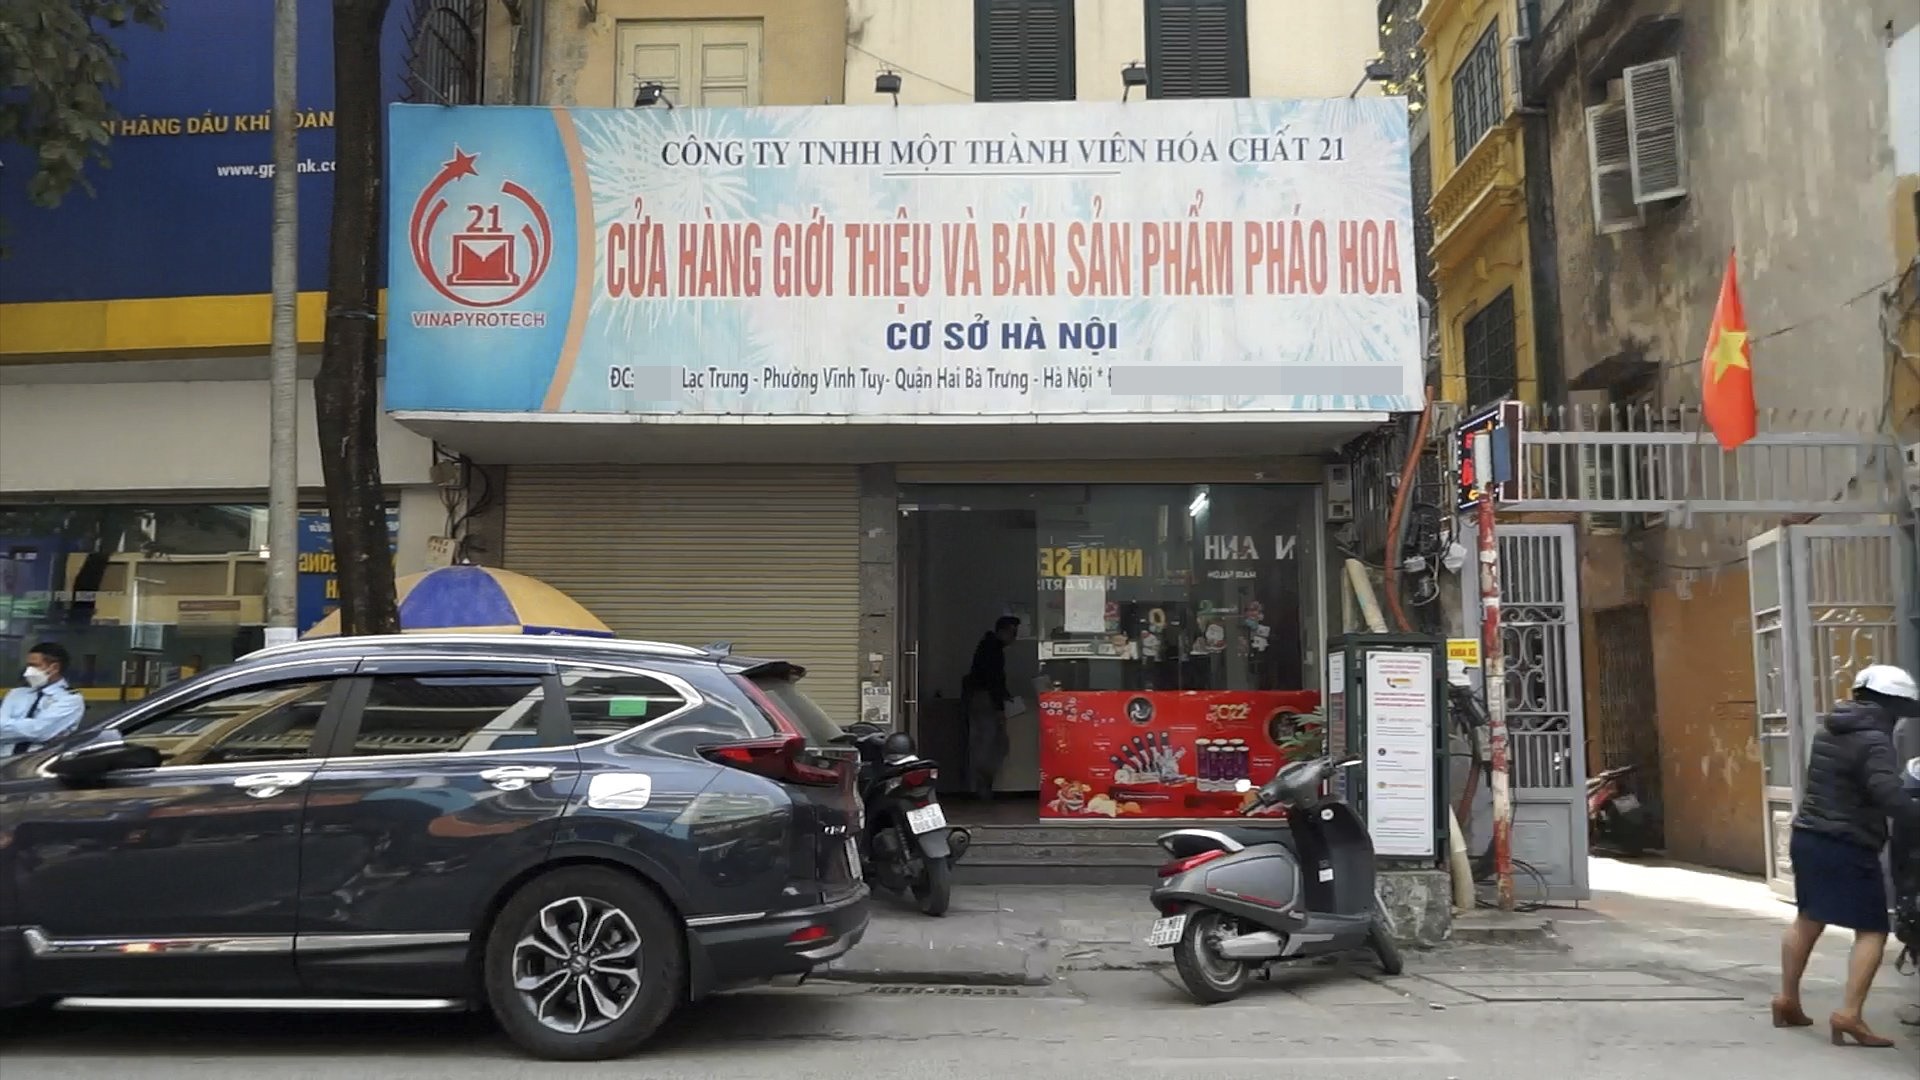 Cửa hàng kinh doanh pháo hoa trên phố Lạc Trung. Ảnh: TG